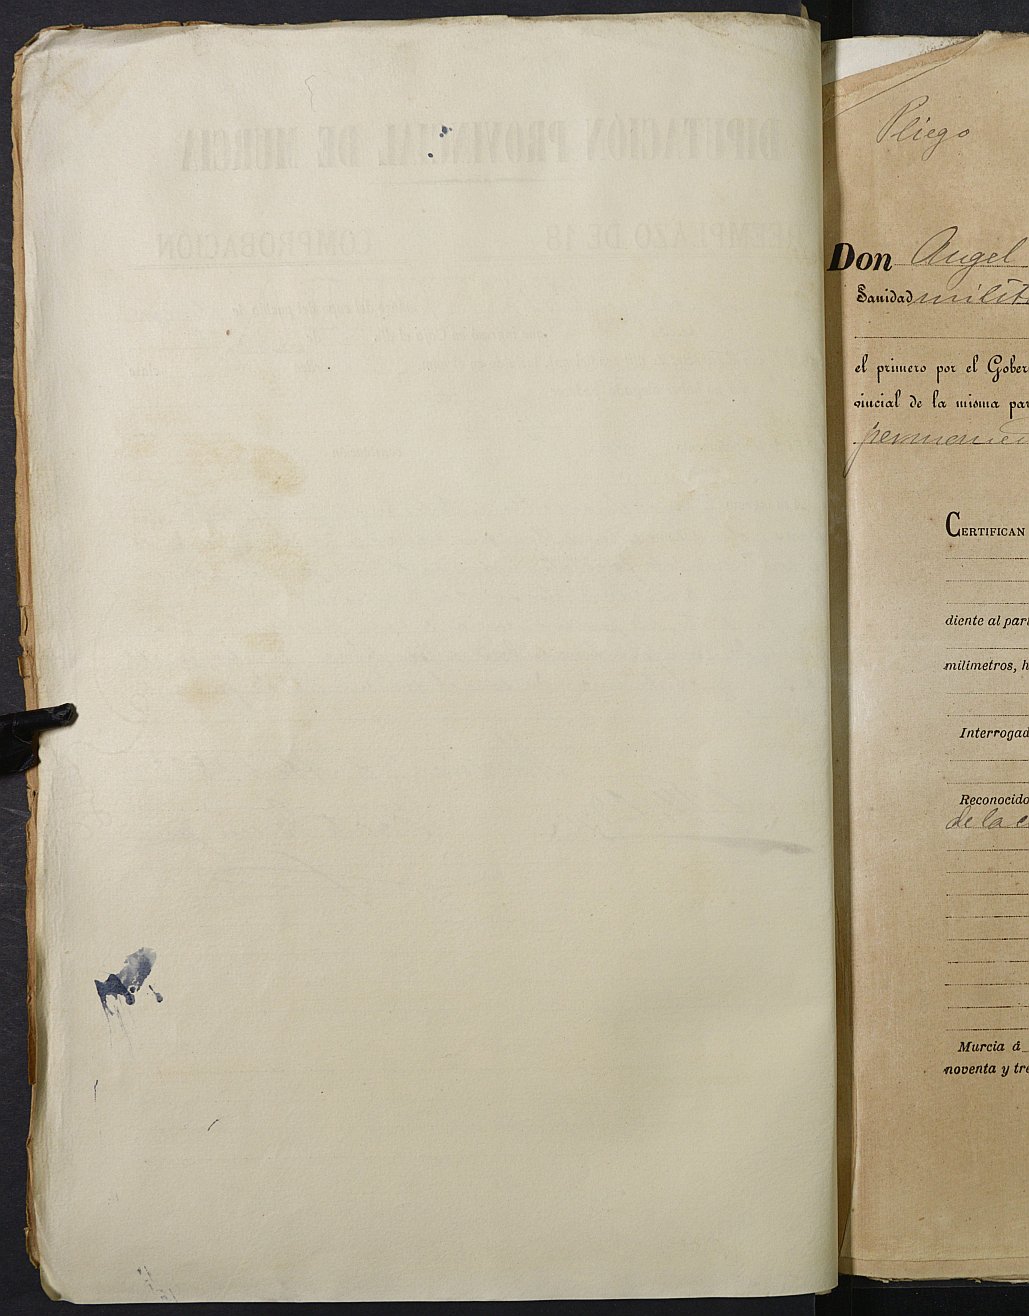 Copia certificada del expediente general de Quintas del Ayuntamiento de Pliego del reemplazo de 1893.